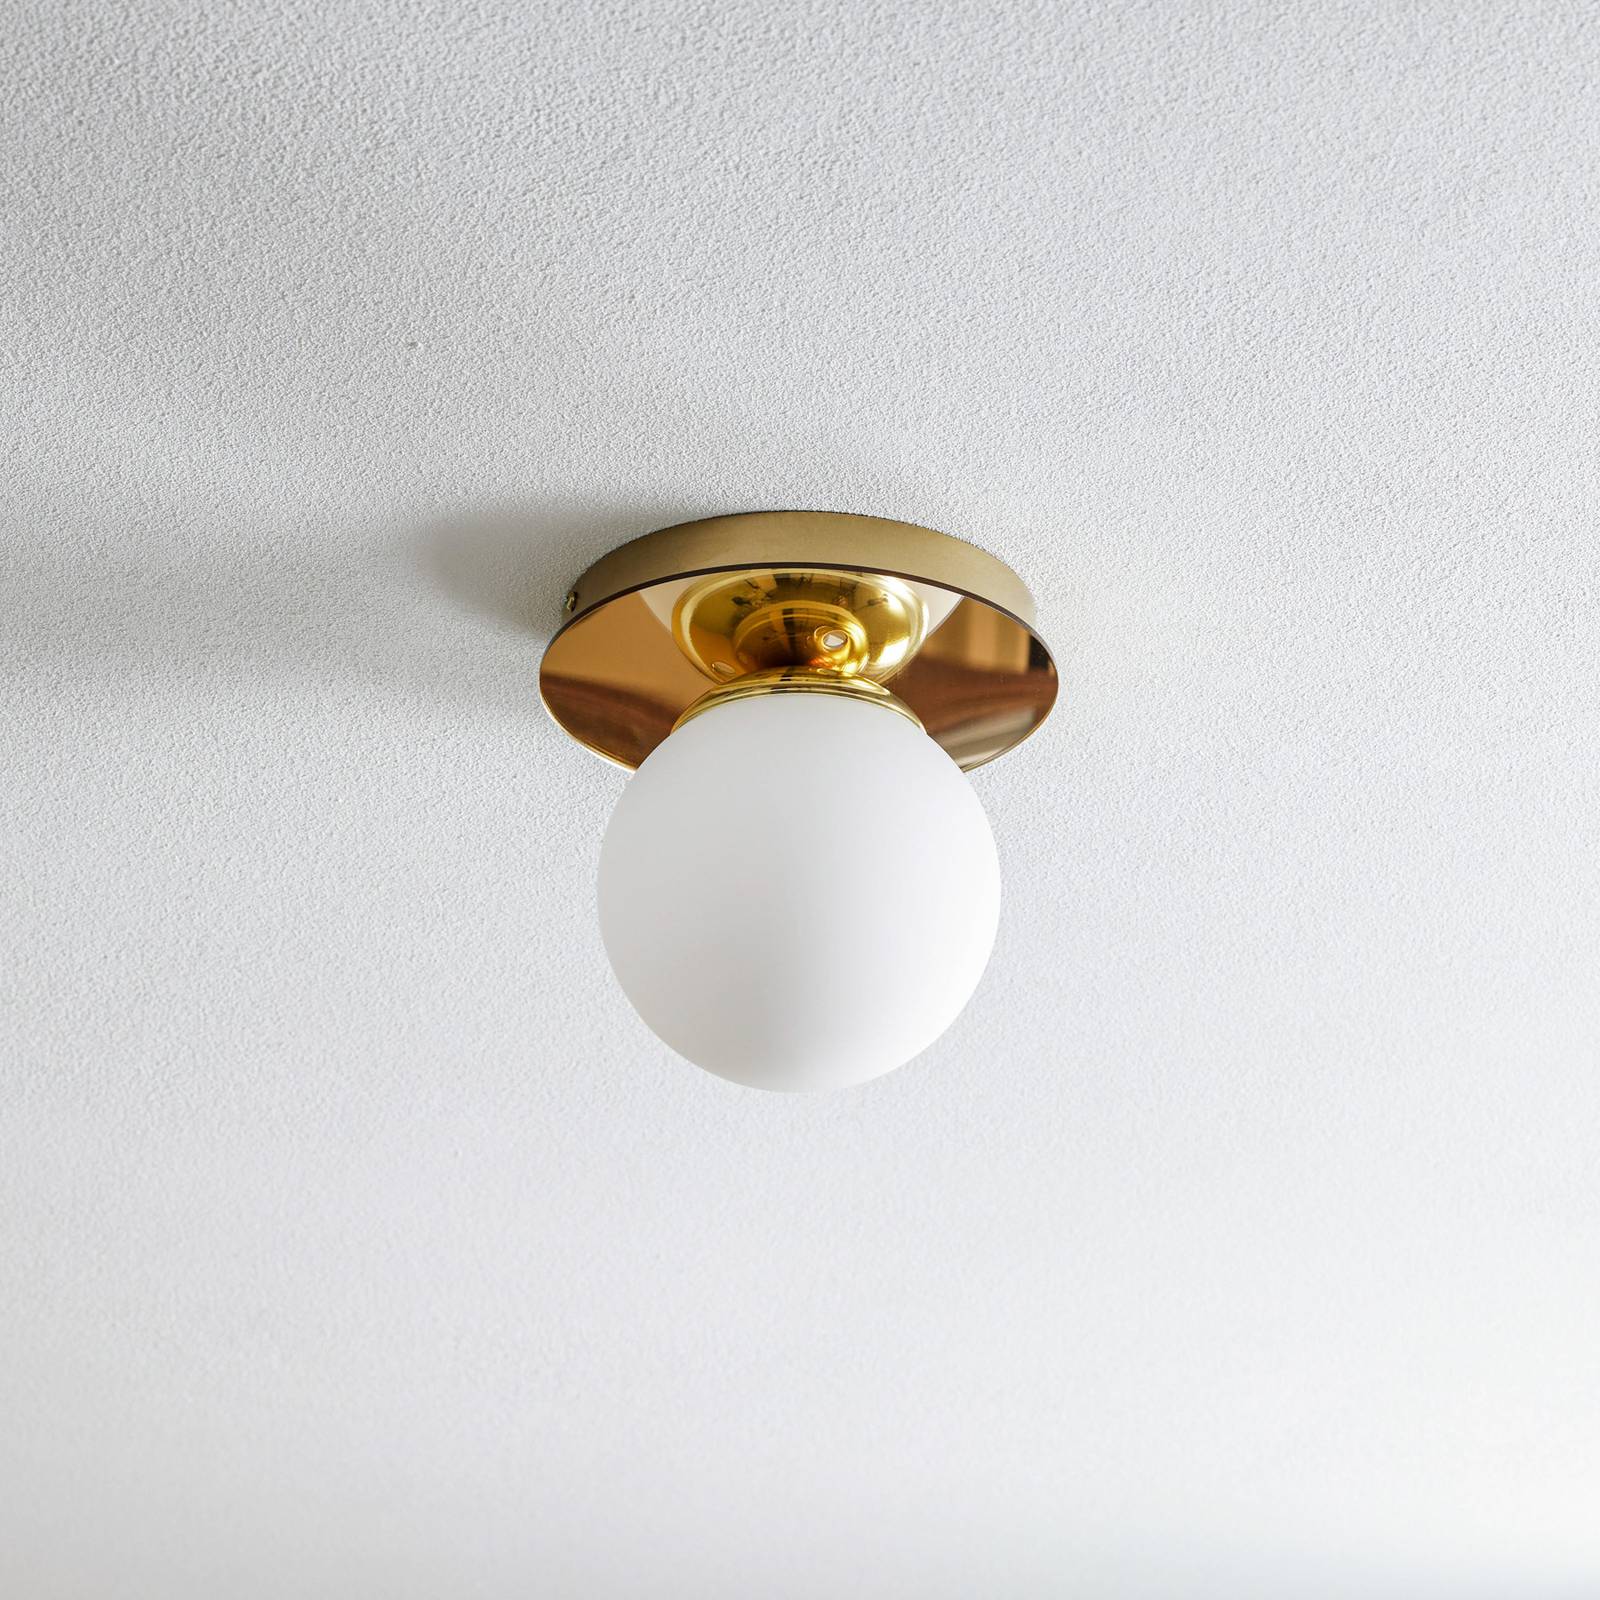 Eko-light plato mennyezeti lámpa, arany színű, fém, opálüveg, ø 22 cm